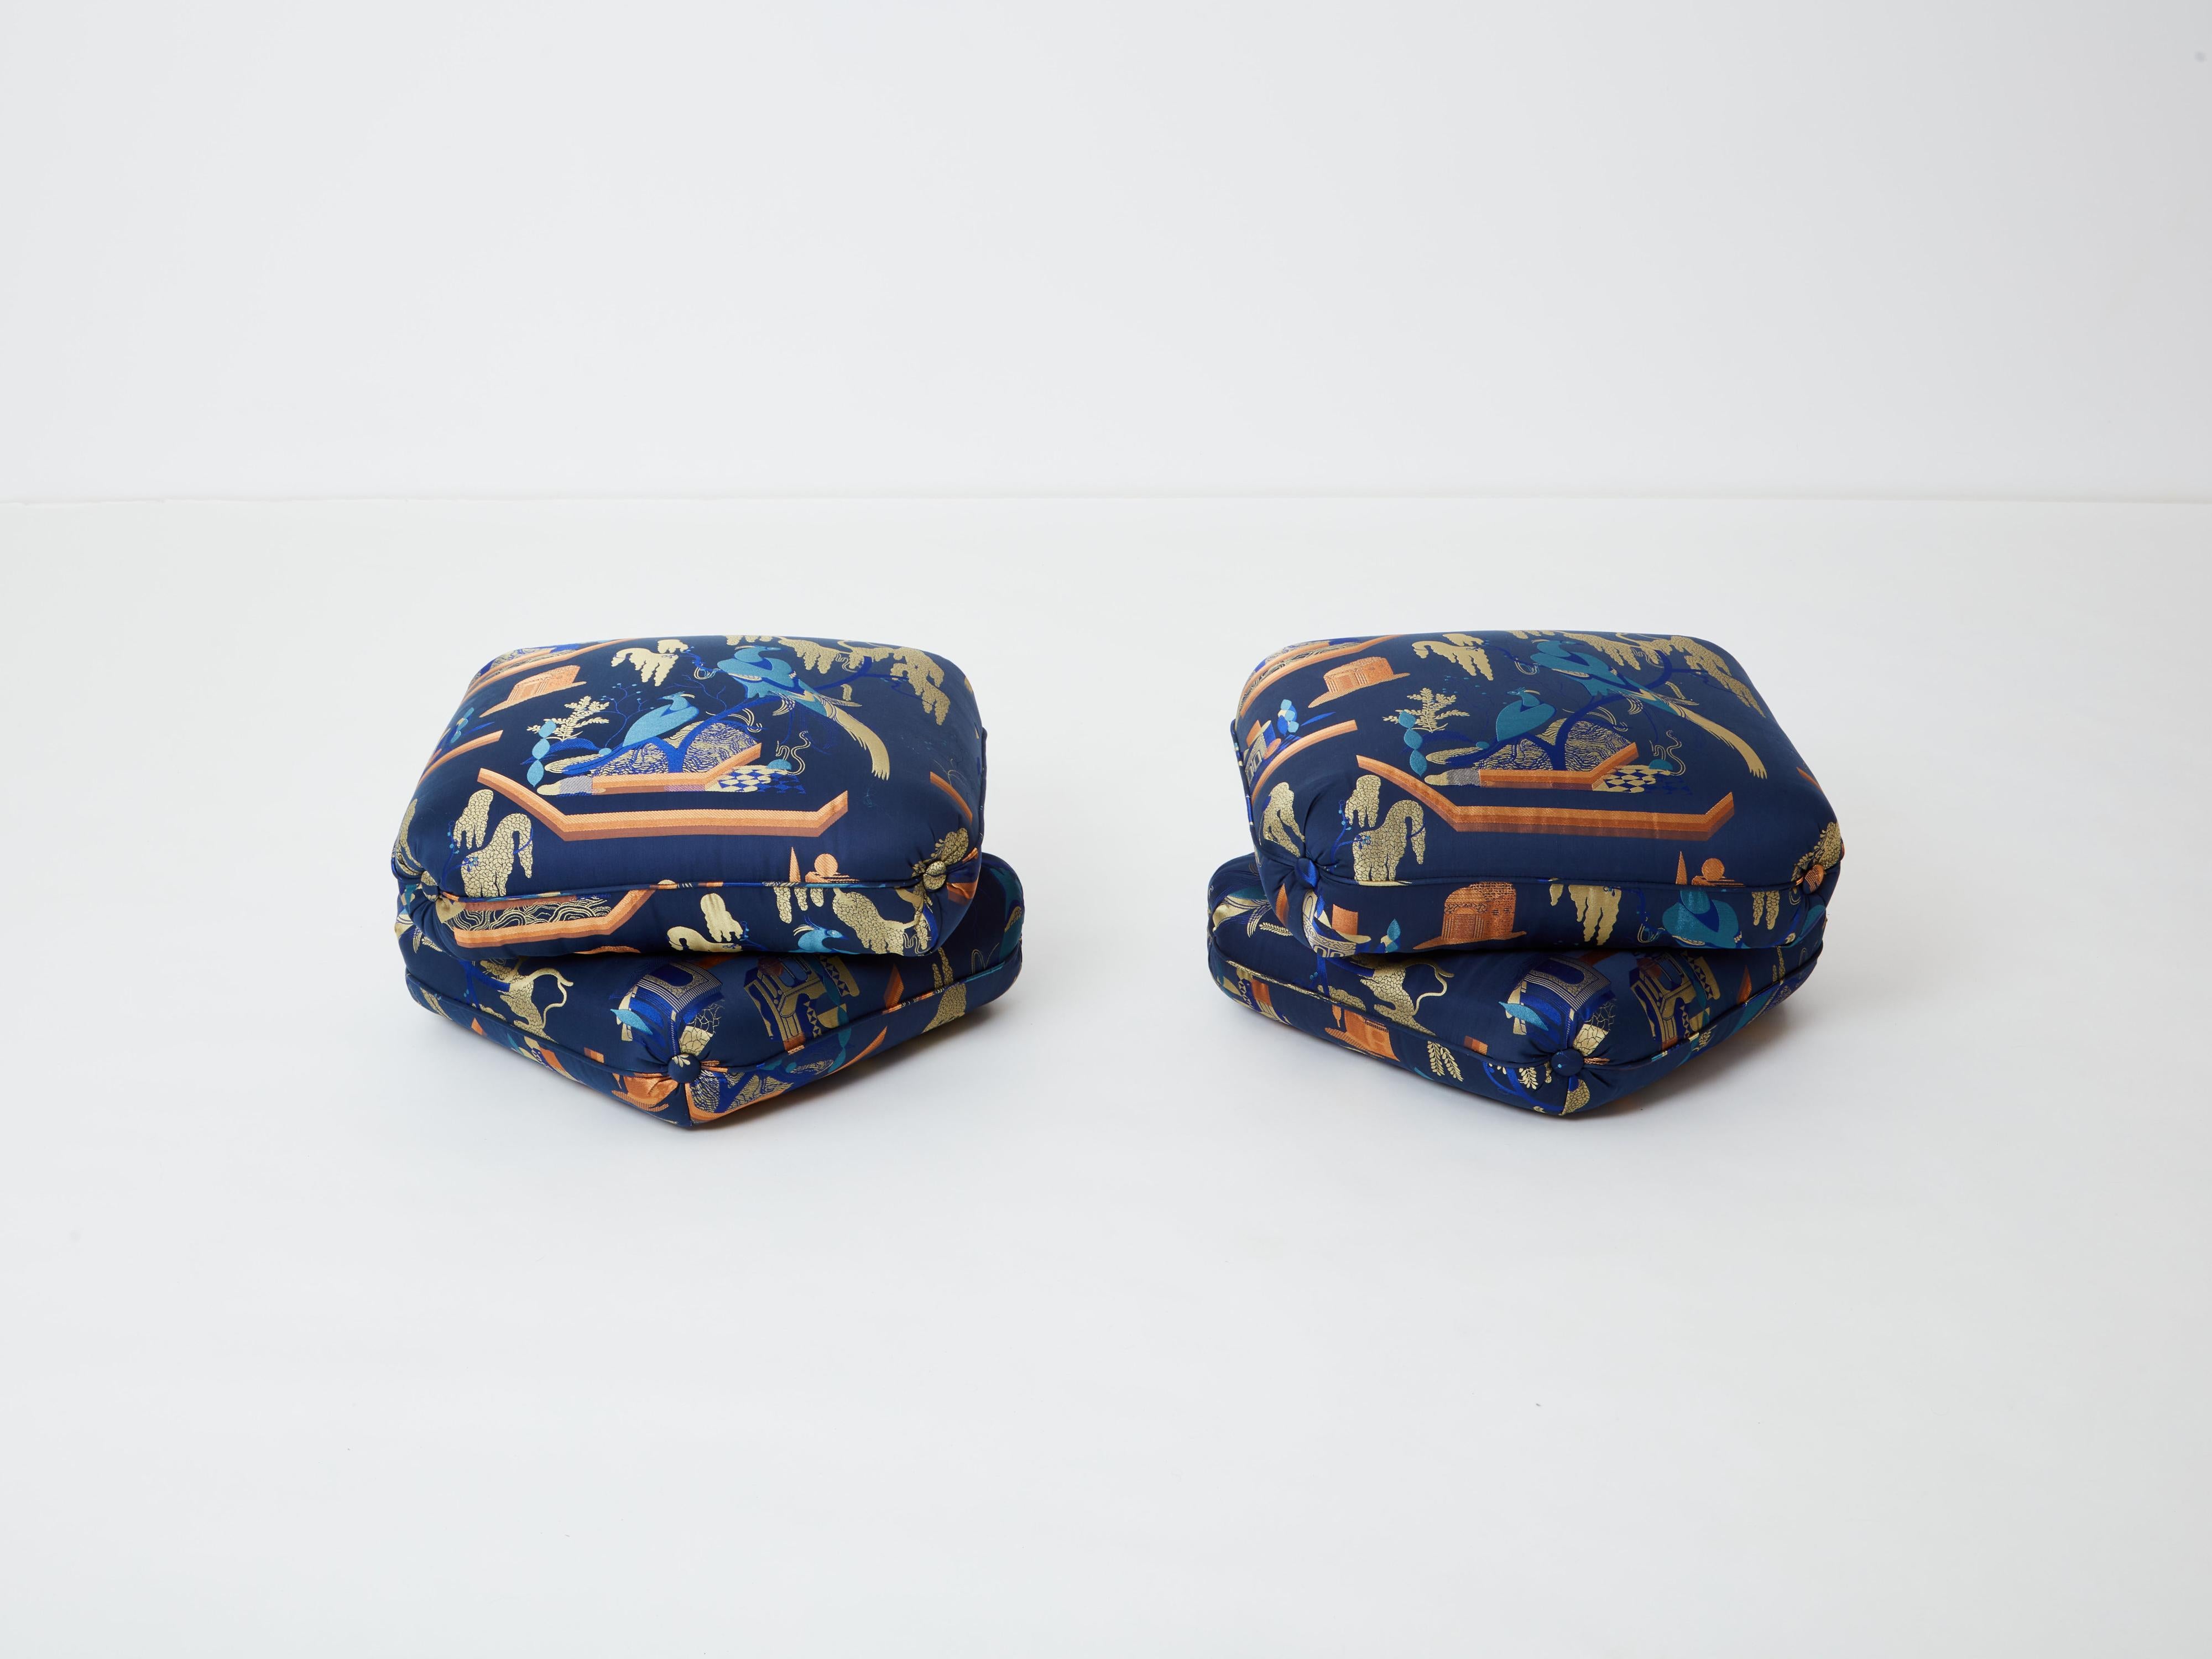 Belle paire de poufs ou tabourets du designer français Jacques Charpentier pour la Maison Jansen, conçus dans les années 1970. Les tabourets ottomans sont constitués de deux grands coussins reliés entre eux. Elles ont été nouvellement tapissées d'un